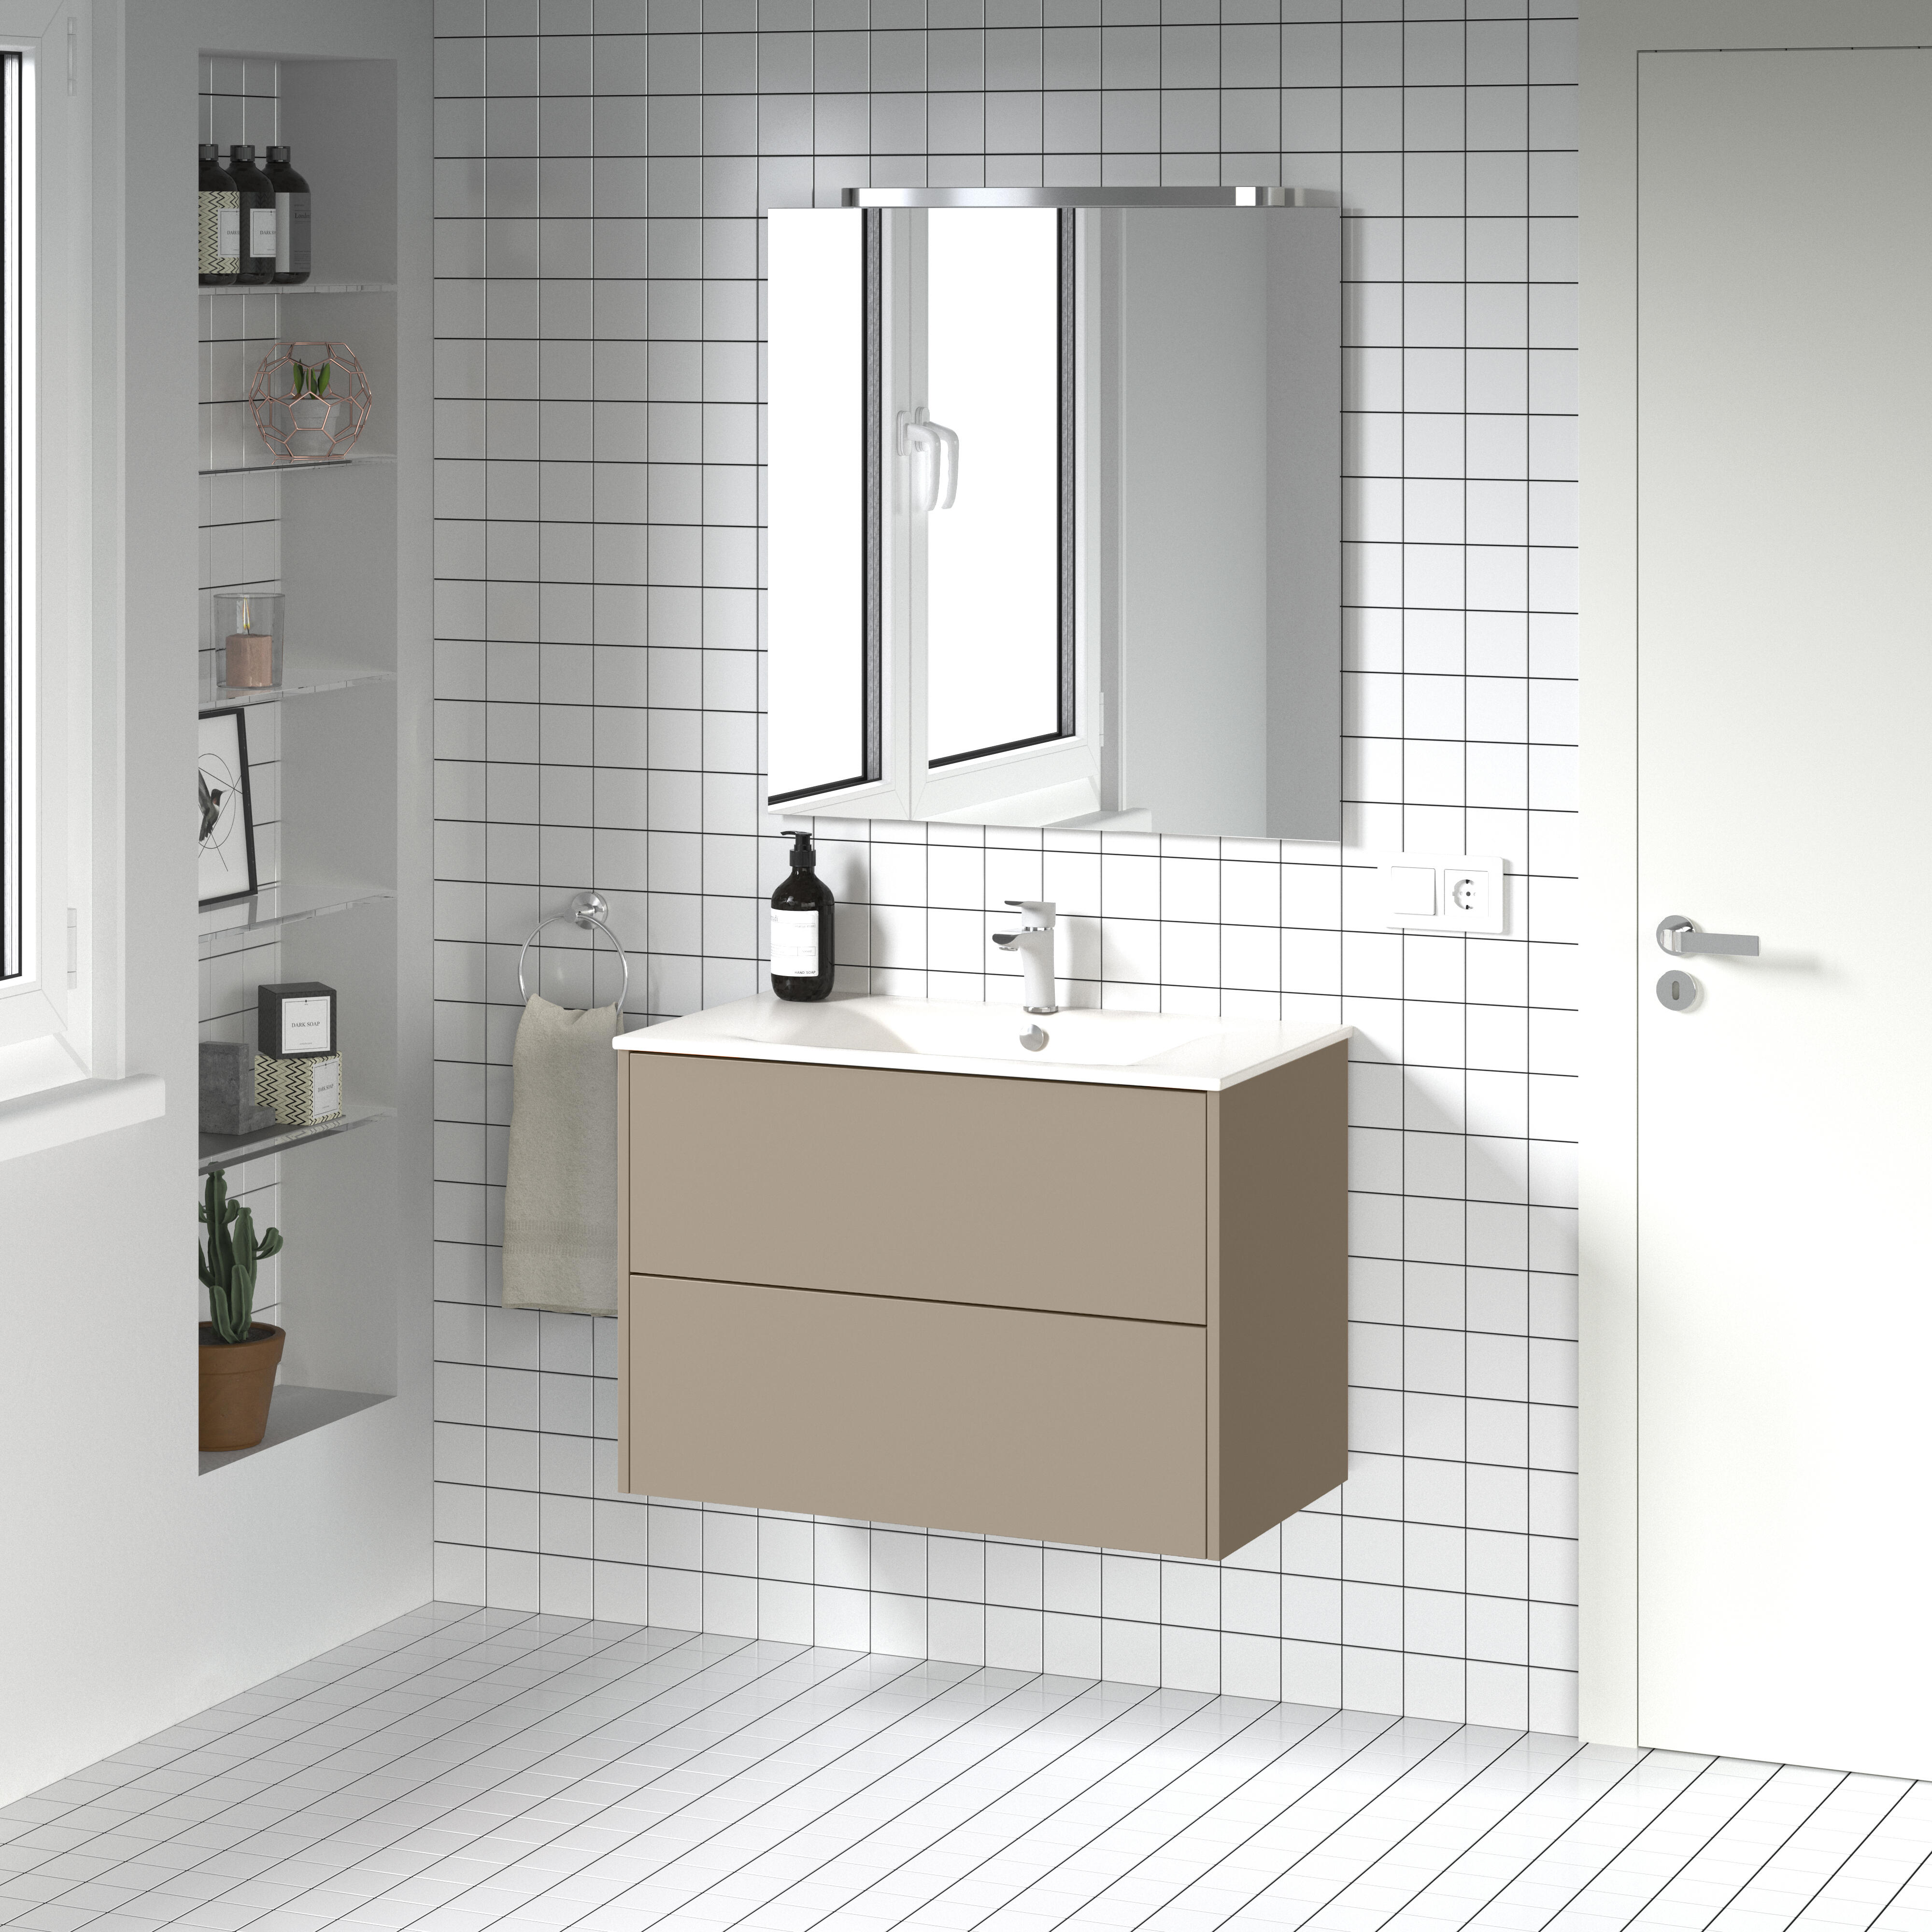 Mueble de baño con lavabo dreams beige 80x45 cm